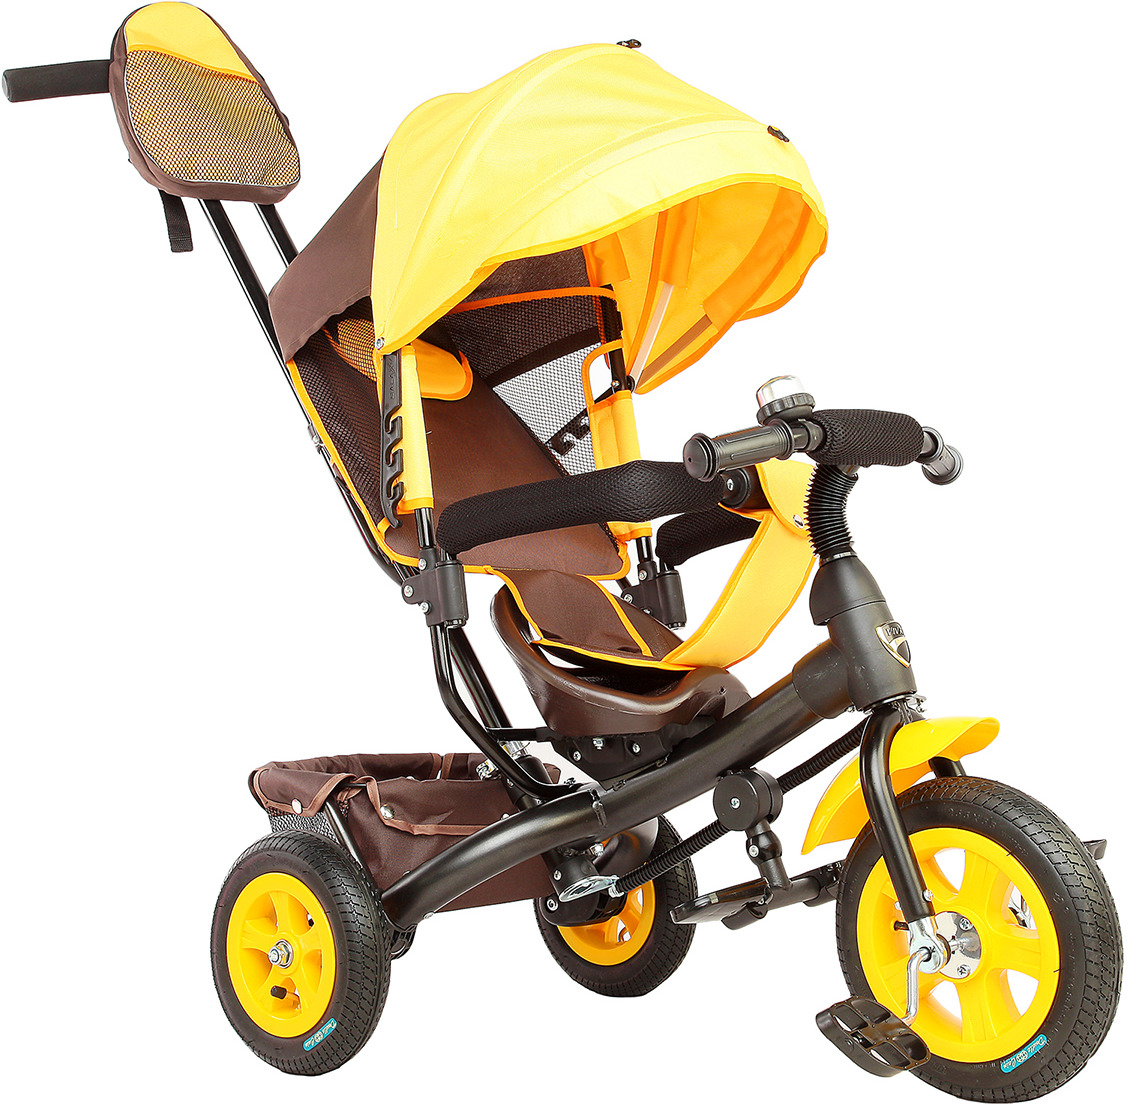 Велосипед трехколесный детский Лучик Vivat 1, 3409396, коричневый, желтый